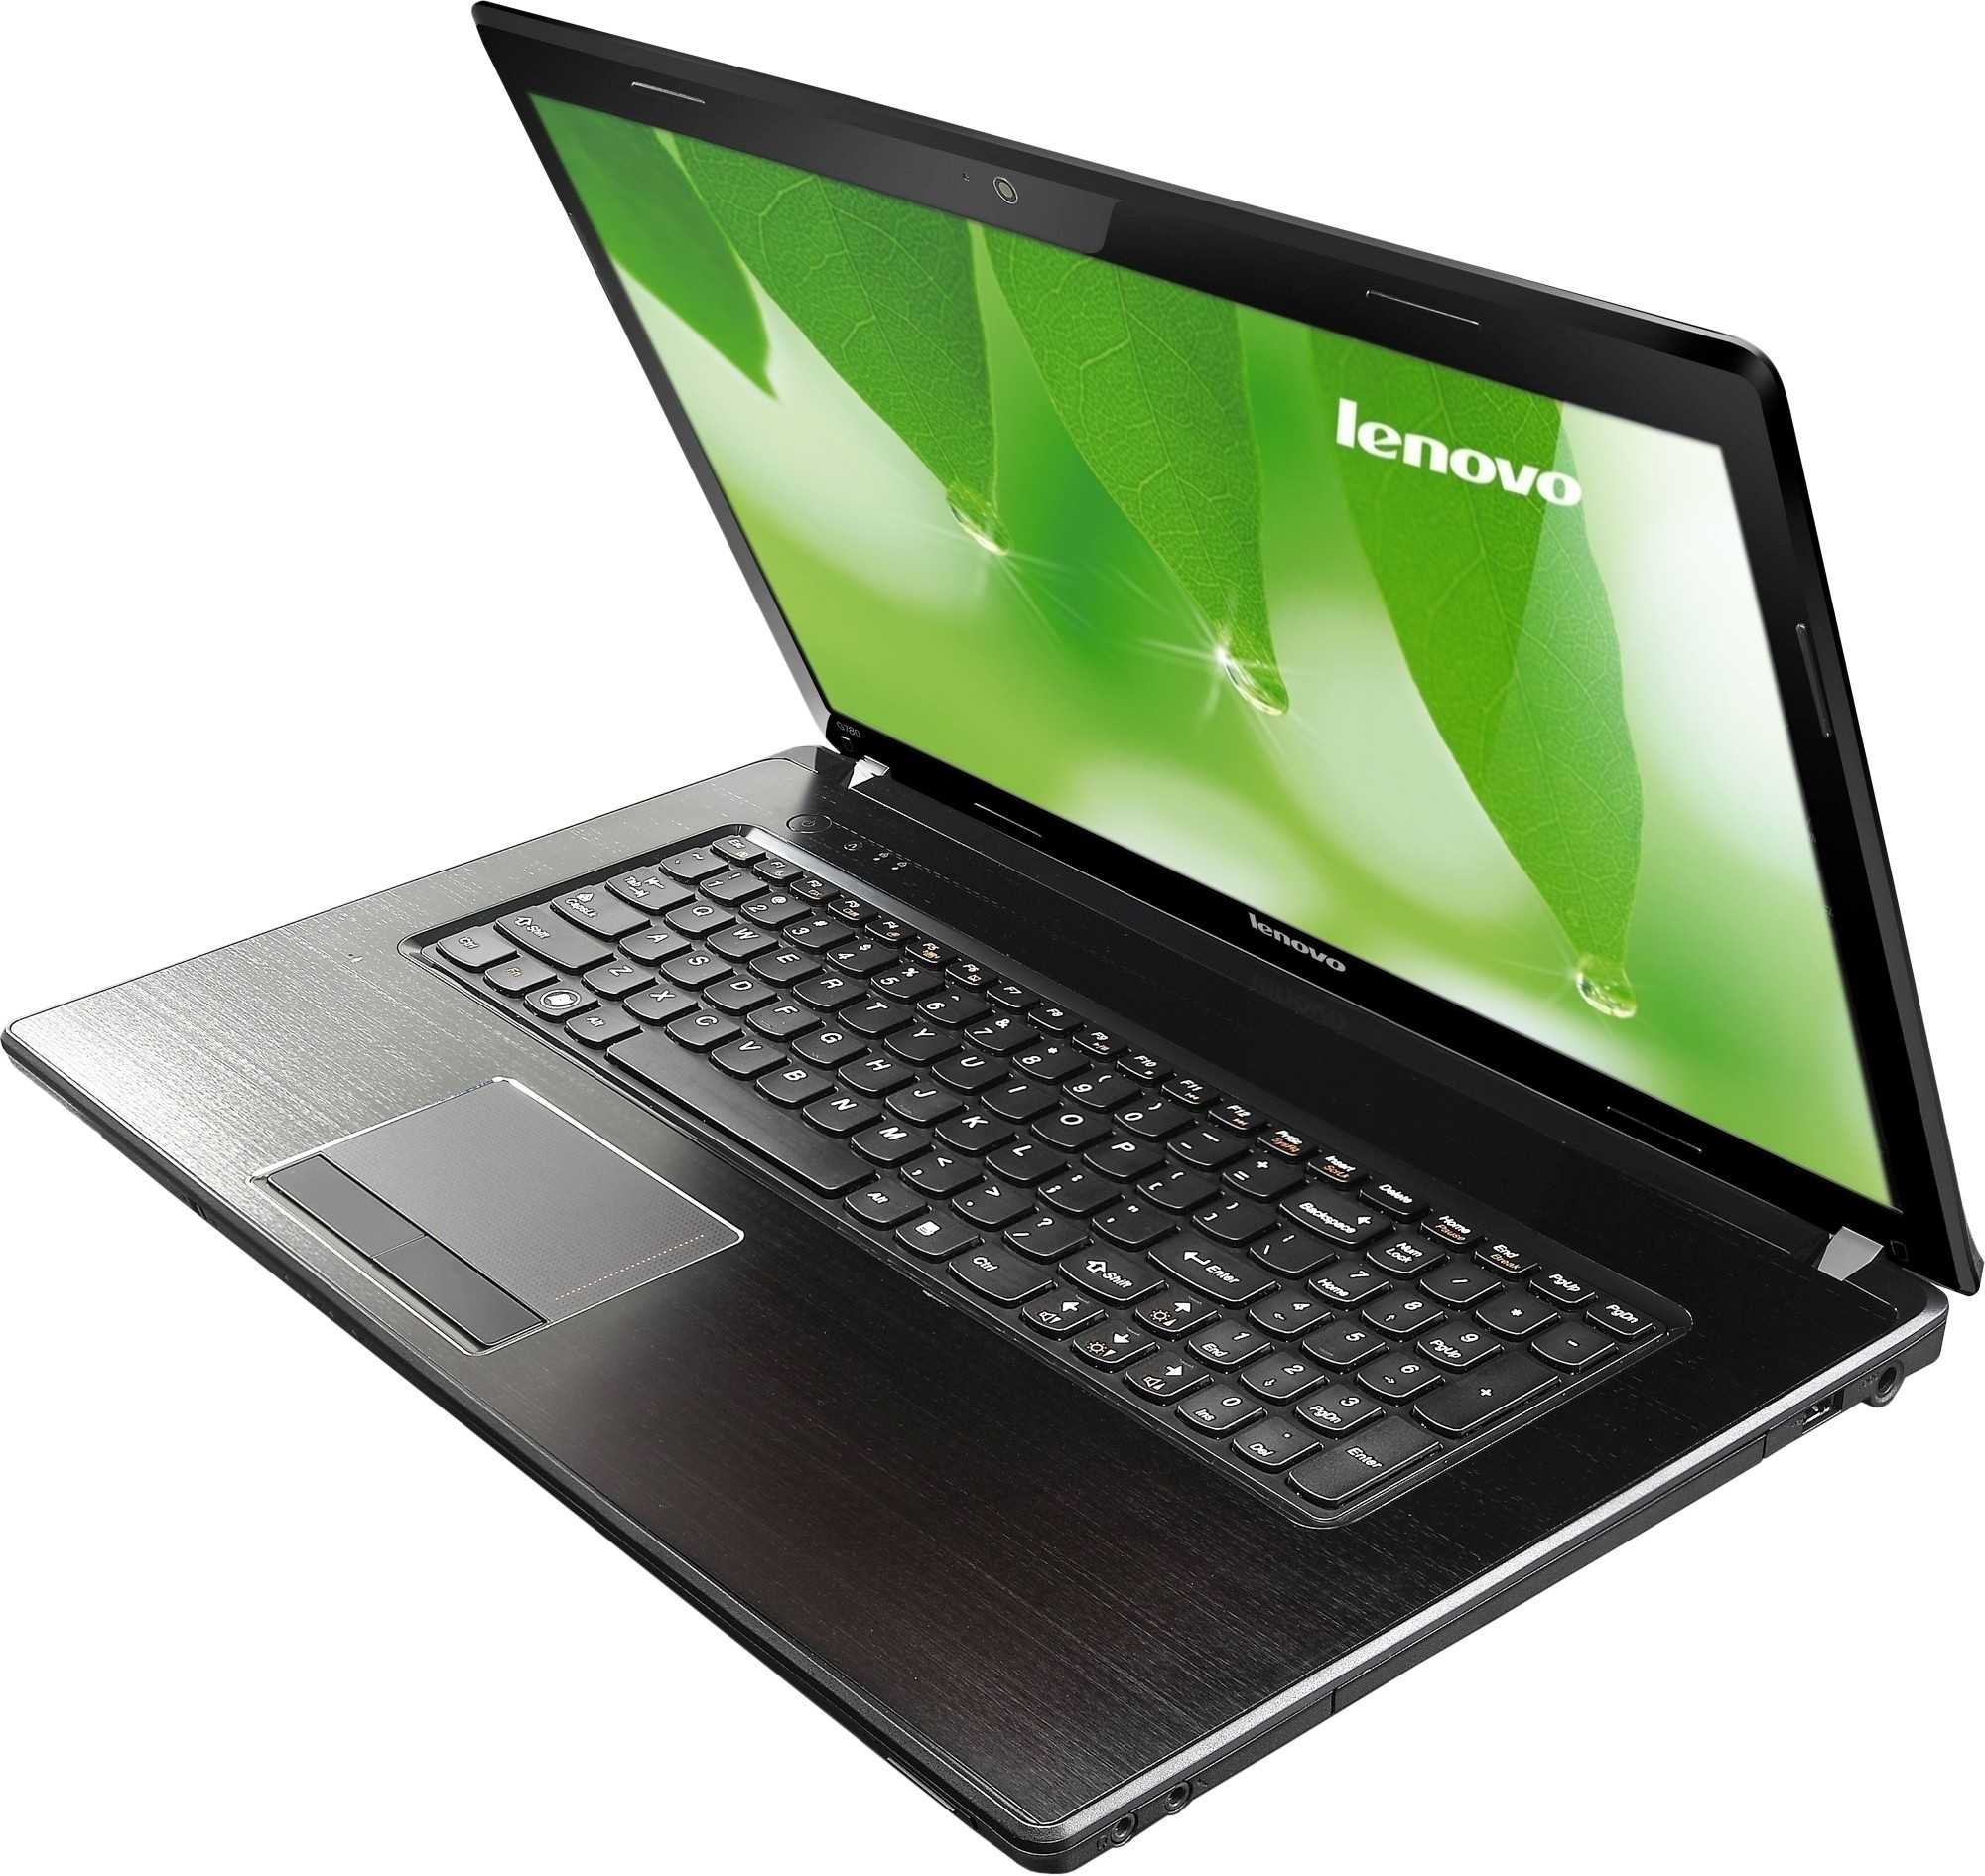 Ноутбук Lenovo G780G (59-371706) - подробные характеристики обзоры видео фото Цены в интернет-магазинах где можно купить ноутбук Lenovo G780G (59-371706)